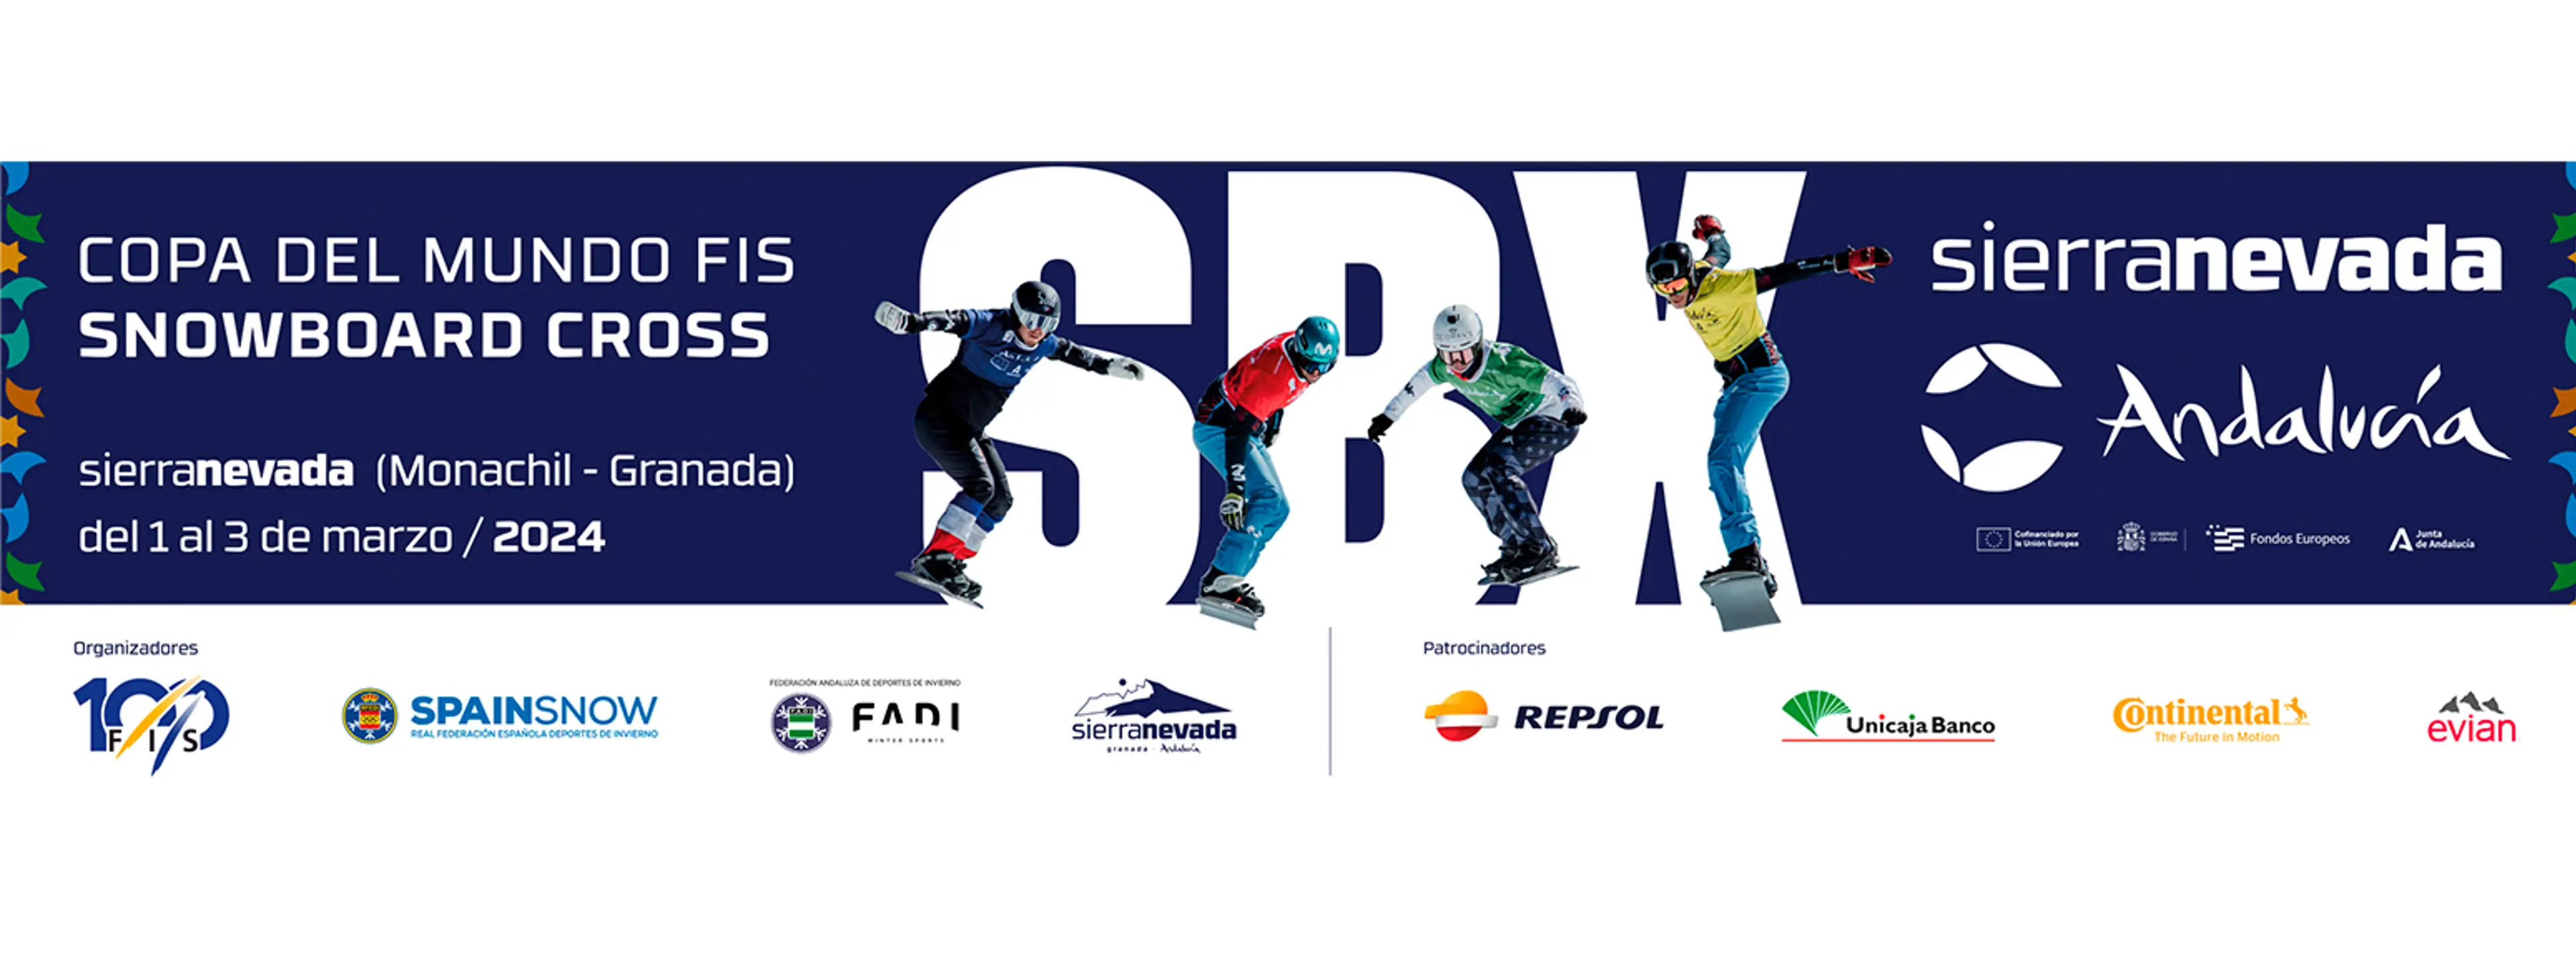 Copa del Mundo FIS Snowboard Cross 2024